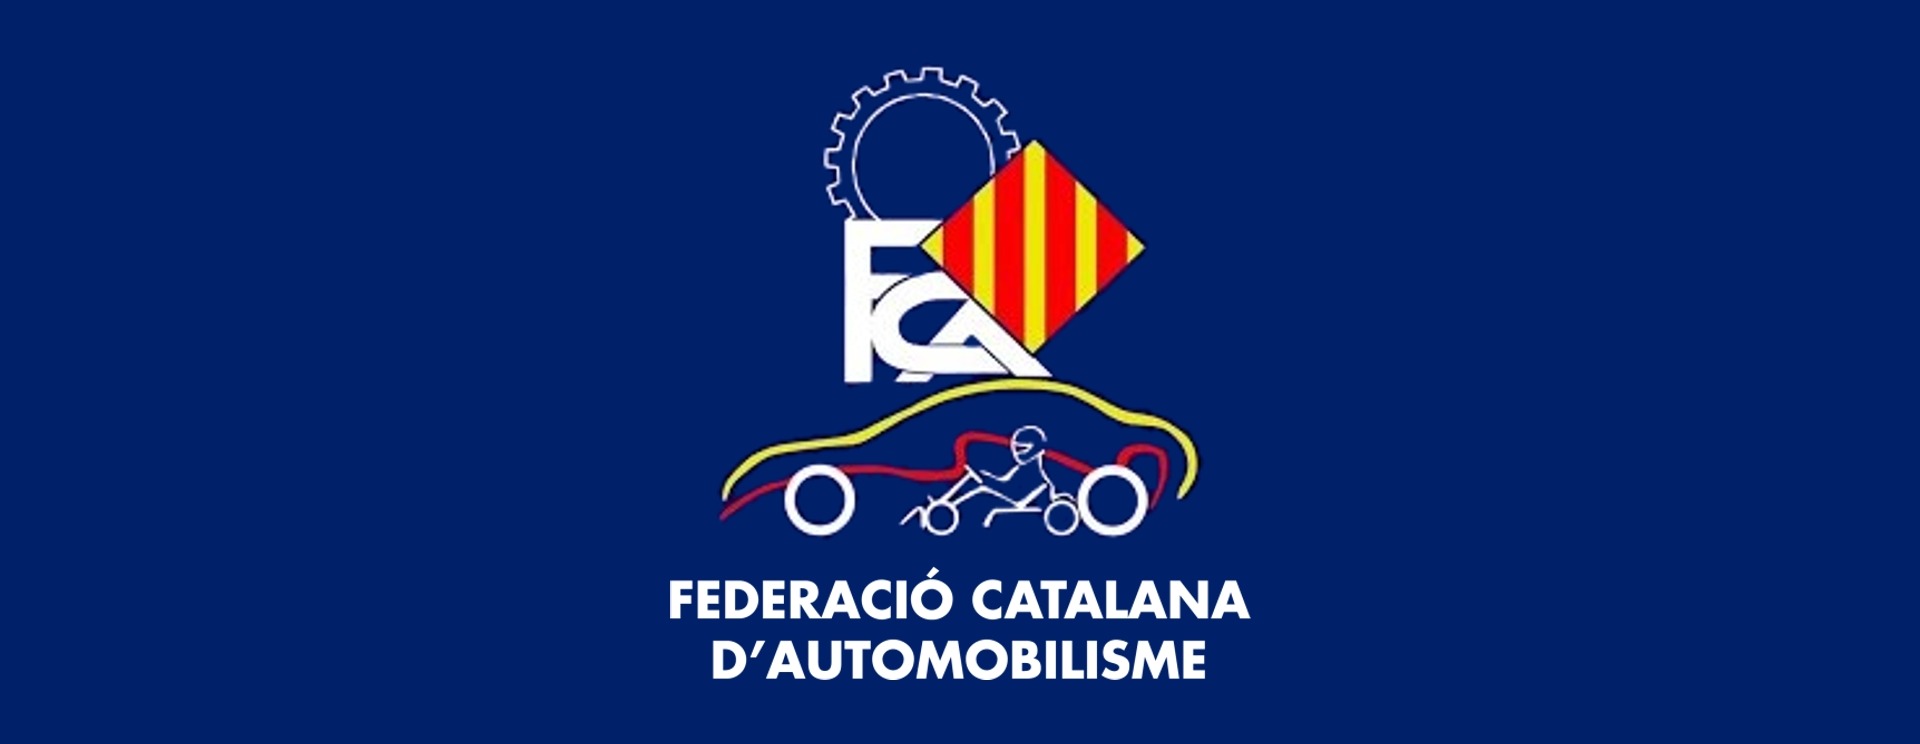 Relleu a la presidència de la Federació Catalana d’Automobilisme